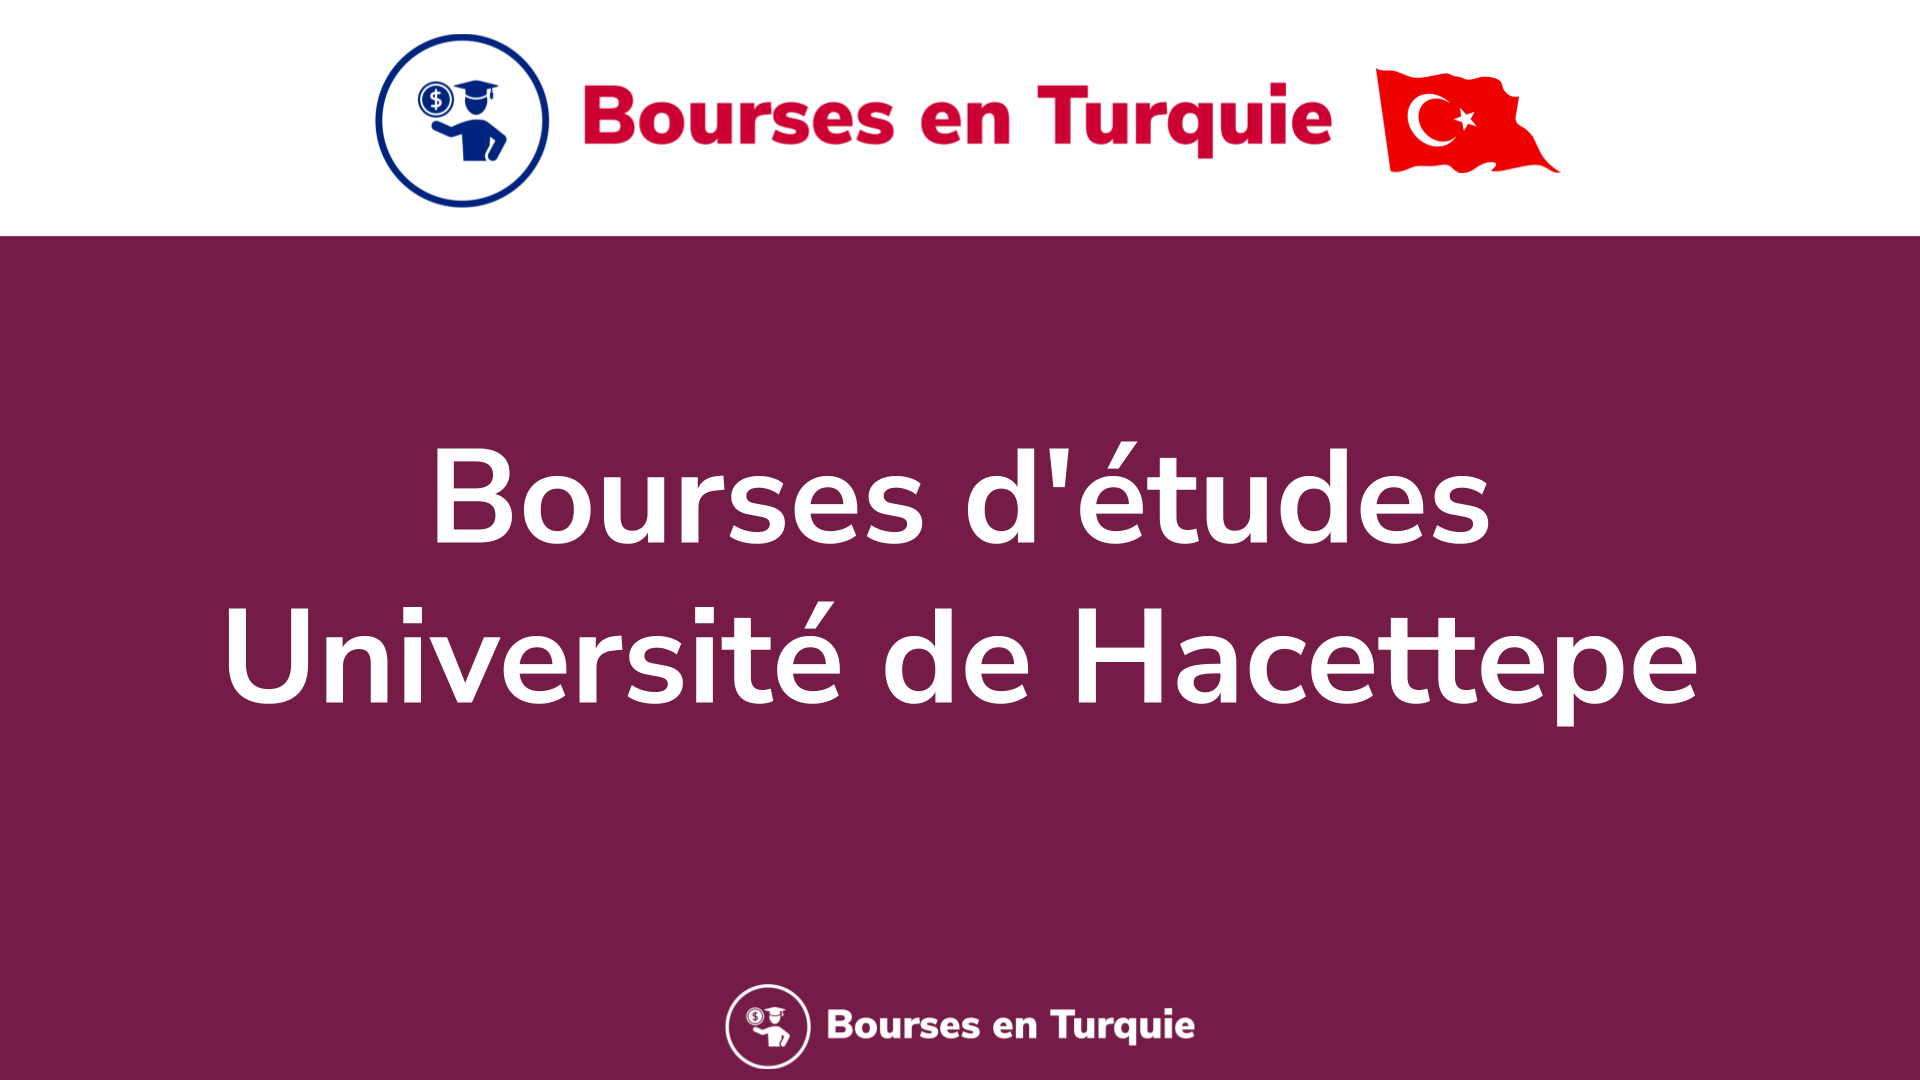 Bourses d'études Université de Hacettepe